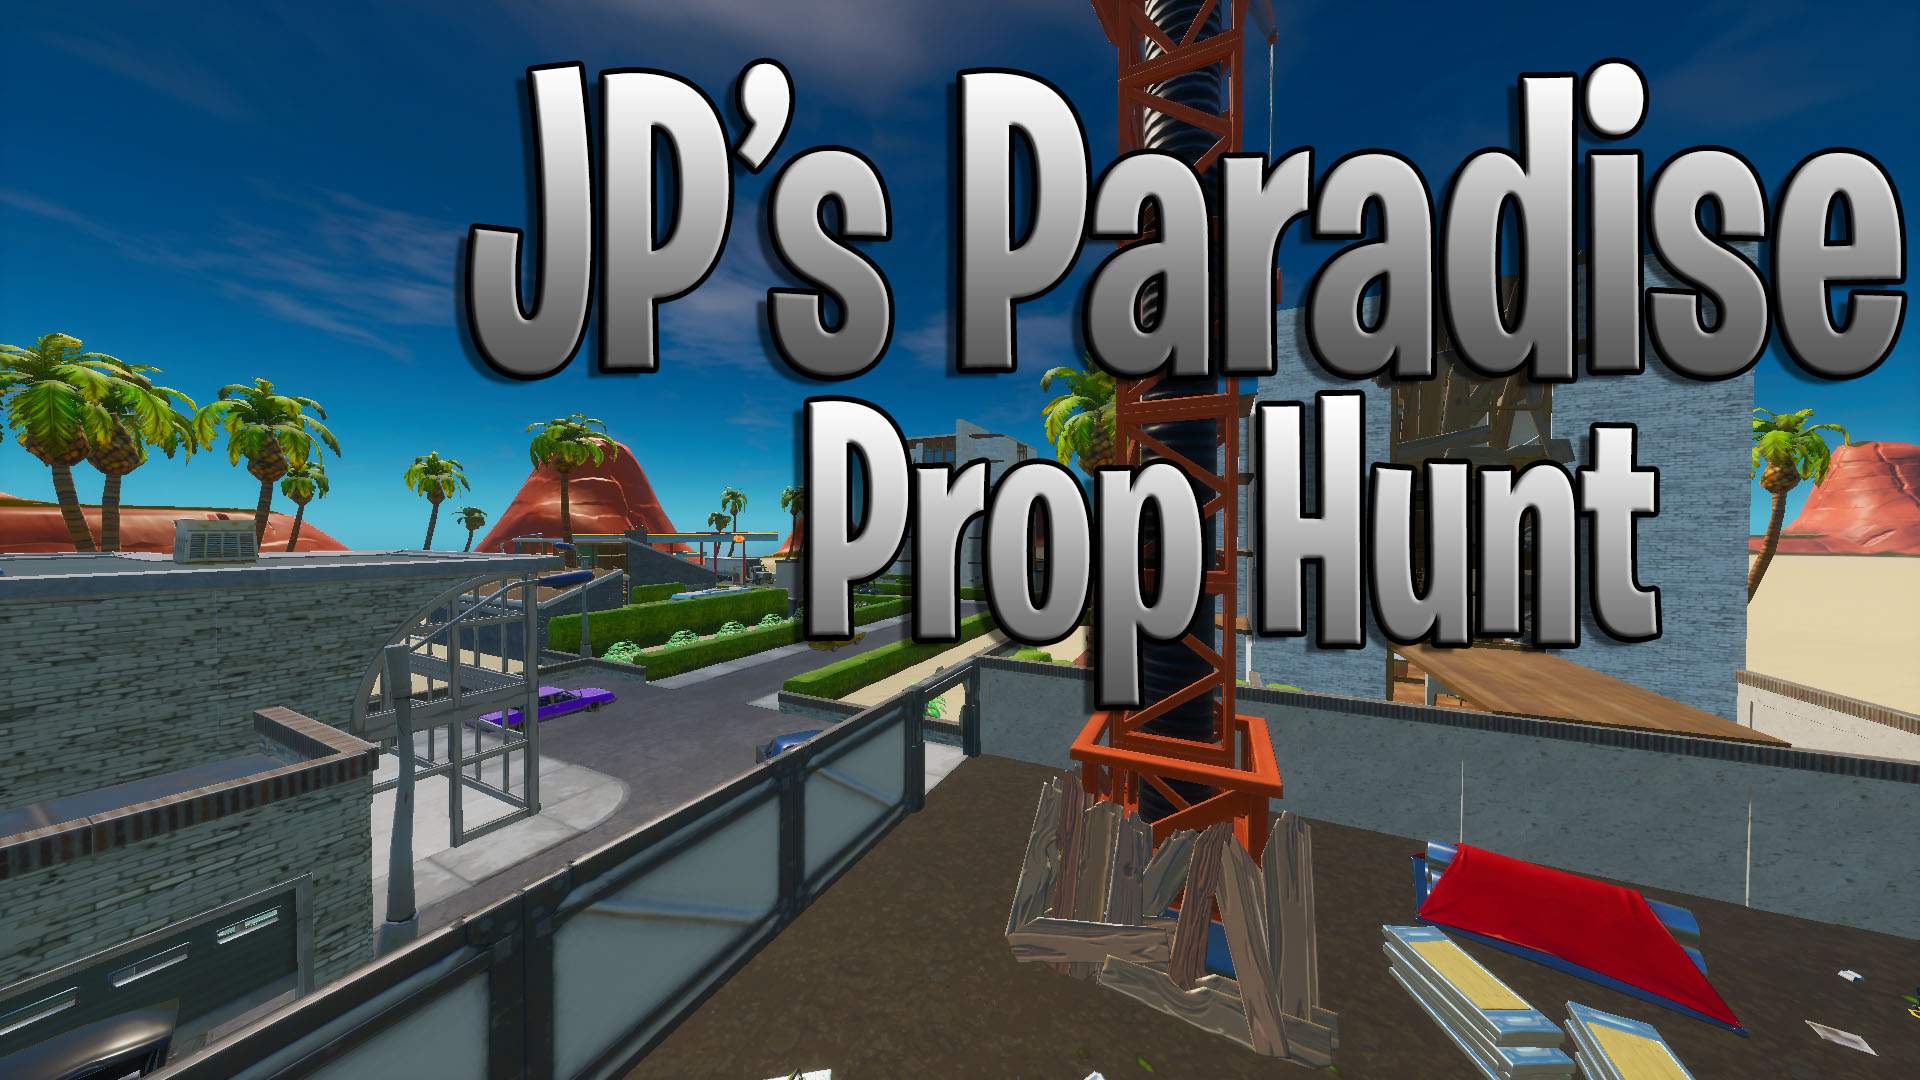 JP'S PARADISE PROP HUNT